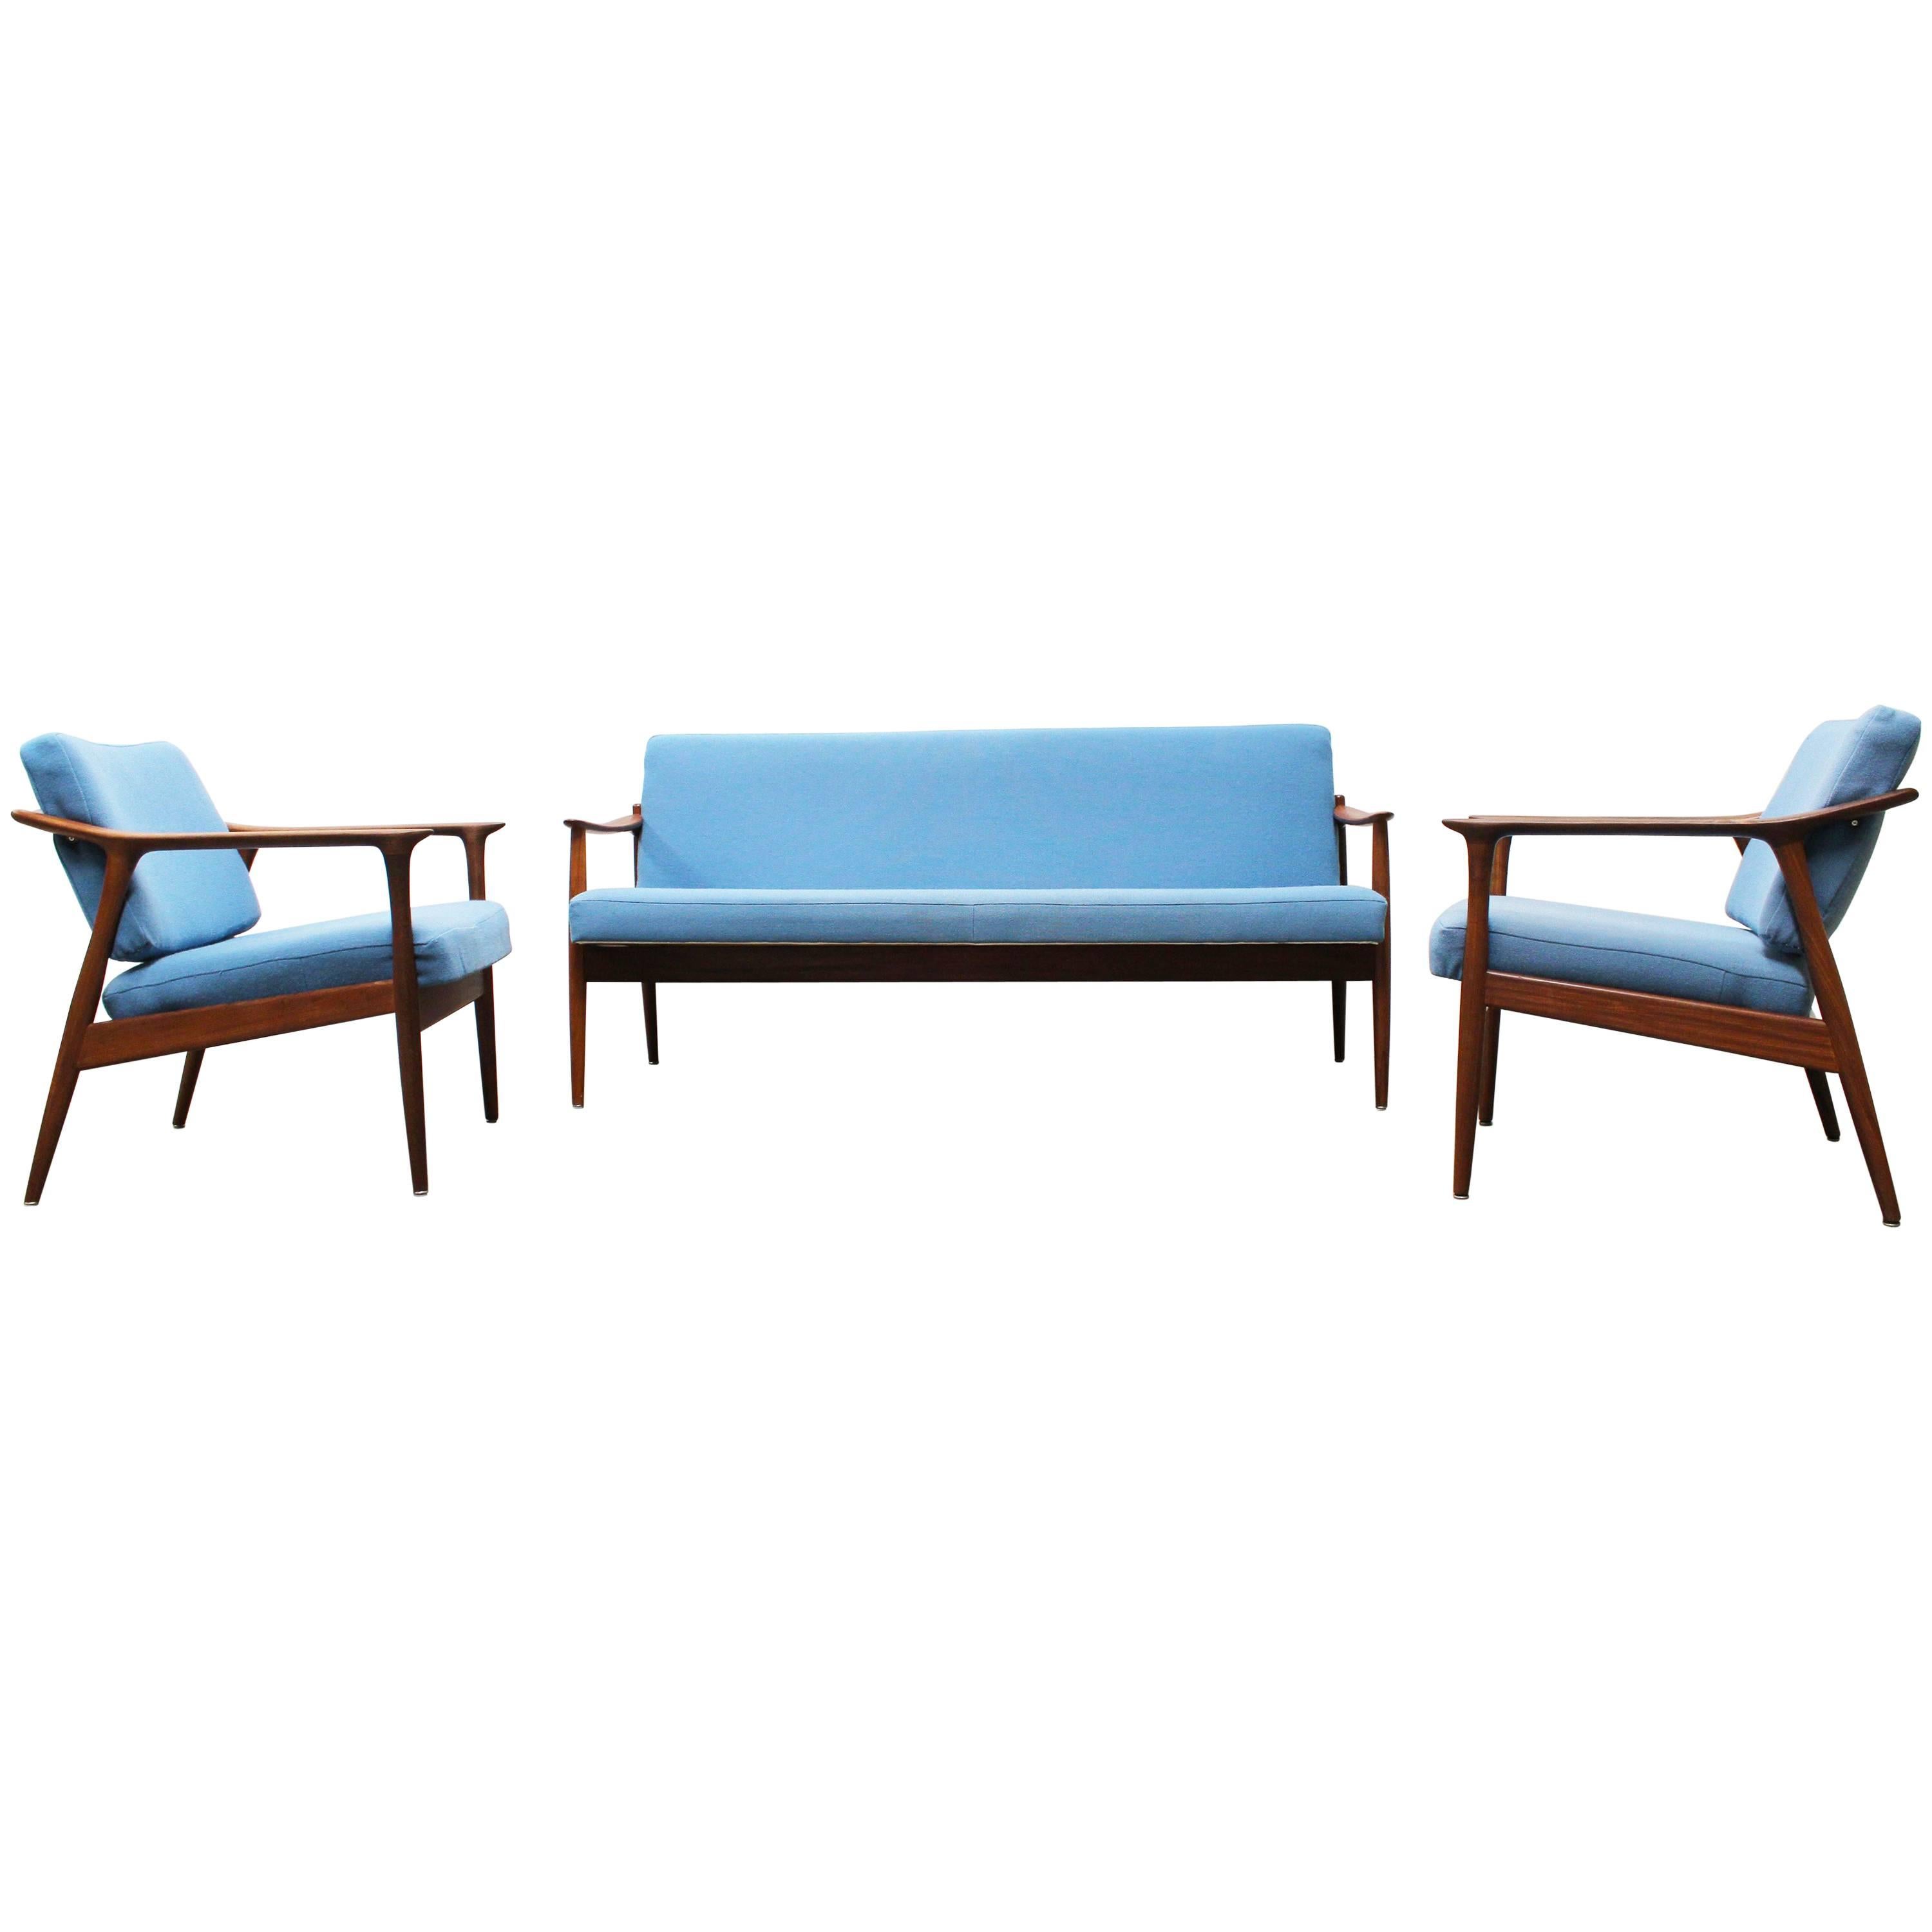 Danish Living Room Set by Torbjørn Afdal for Sandvik Mobler, 1950, Blue Teak